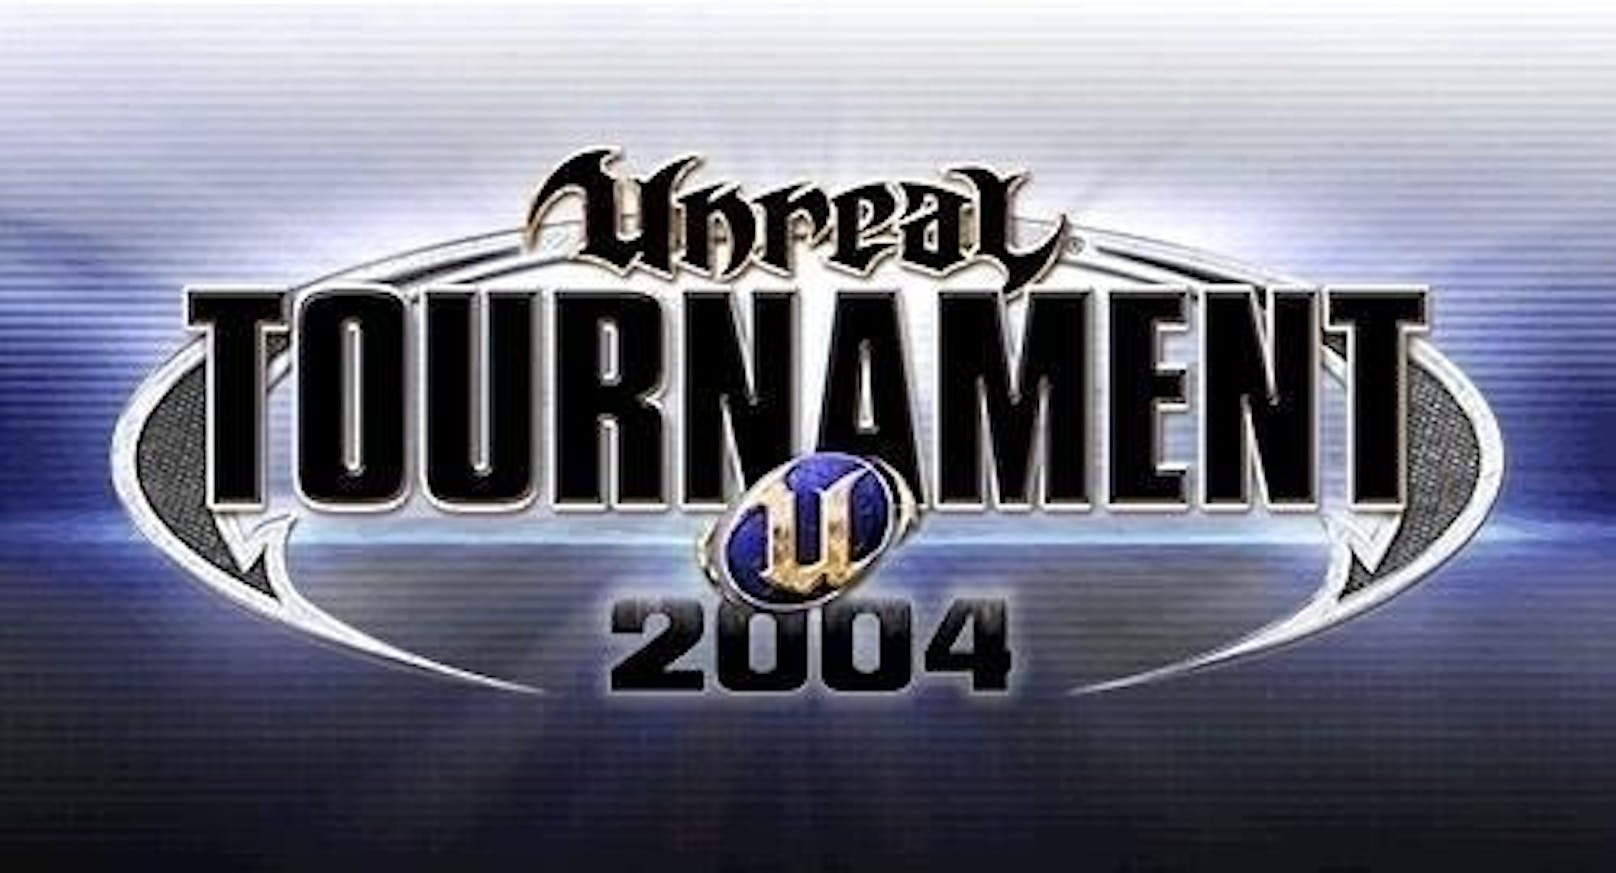 <b>2004:</b> Epic Games startete den ersten Wettbewerb, der auf Entwickler abzielte. Sie konnten Mods für die "Unreal"-Serie einreichen. Im Gegenzug gab es Hardware-Preise, aber auch Bargeld.